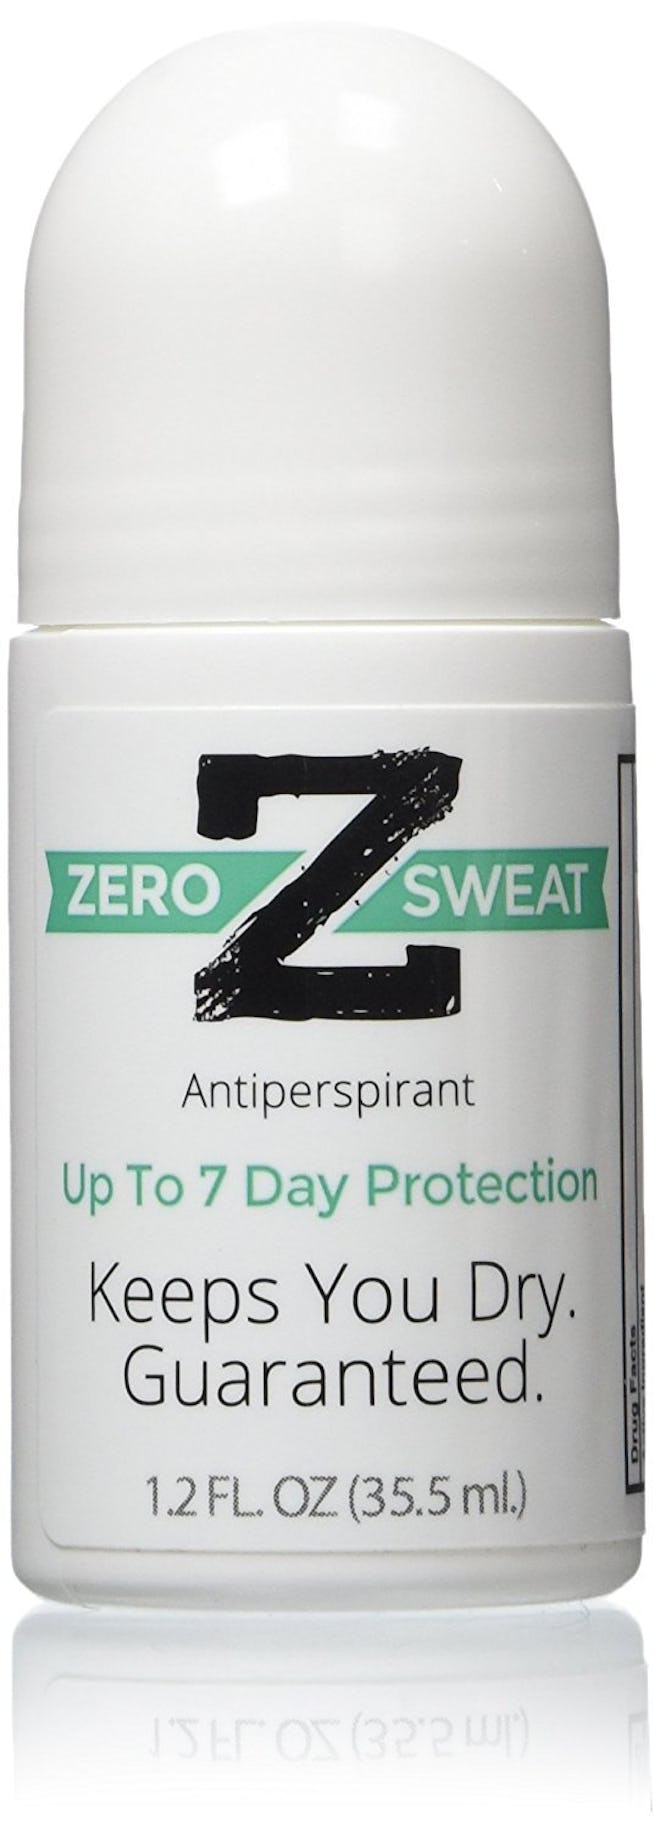 best deodorants for sweaty people zerosweat